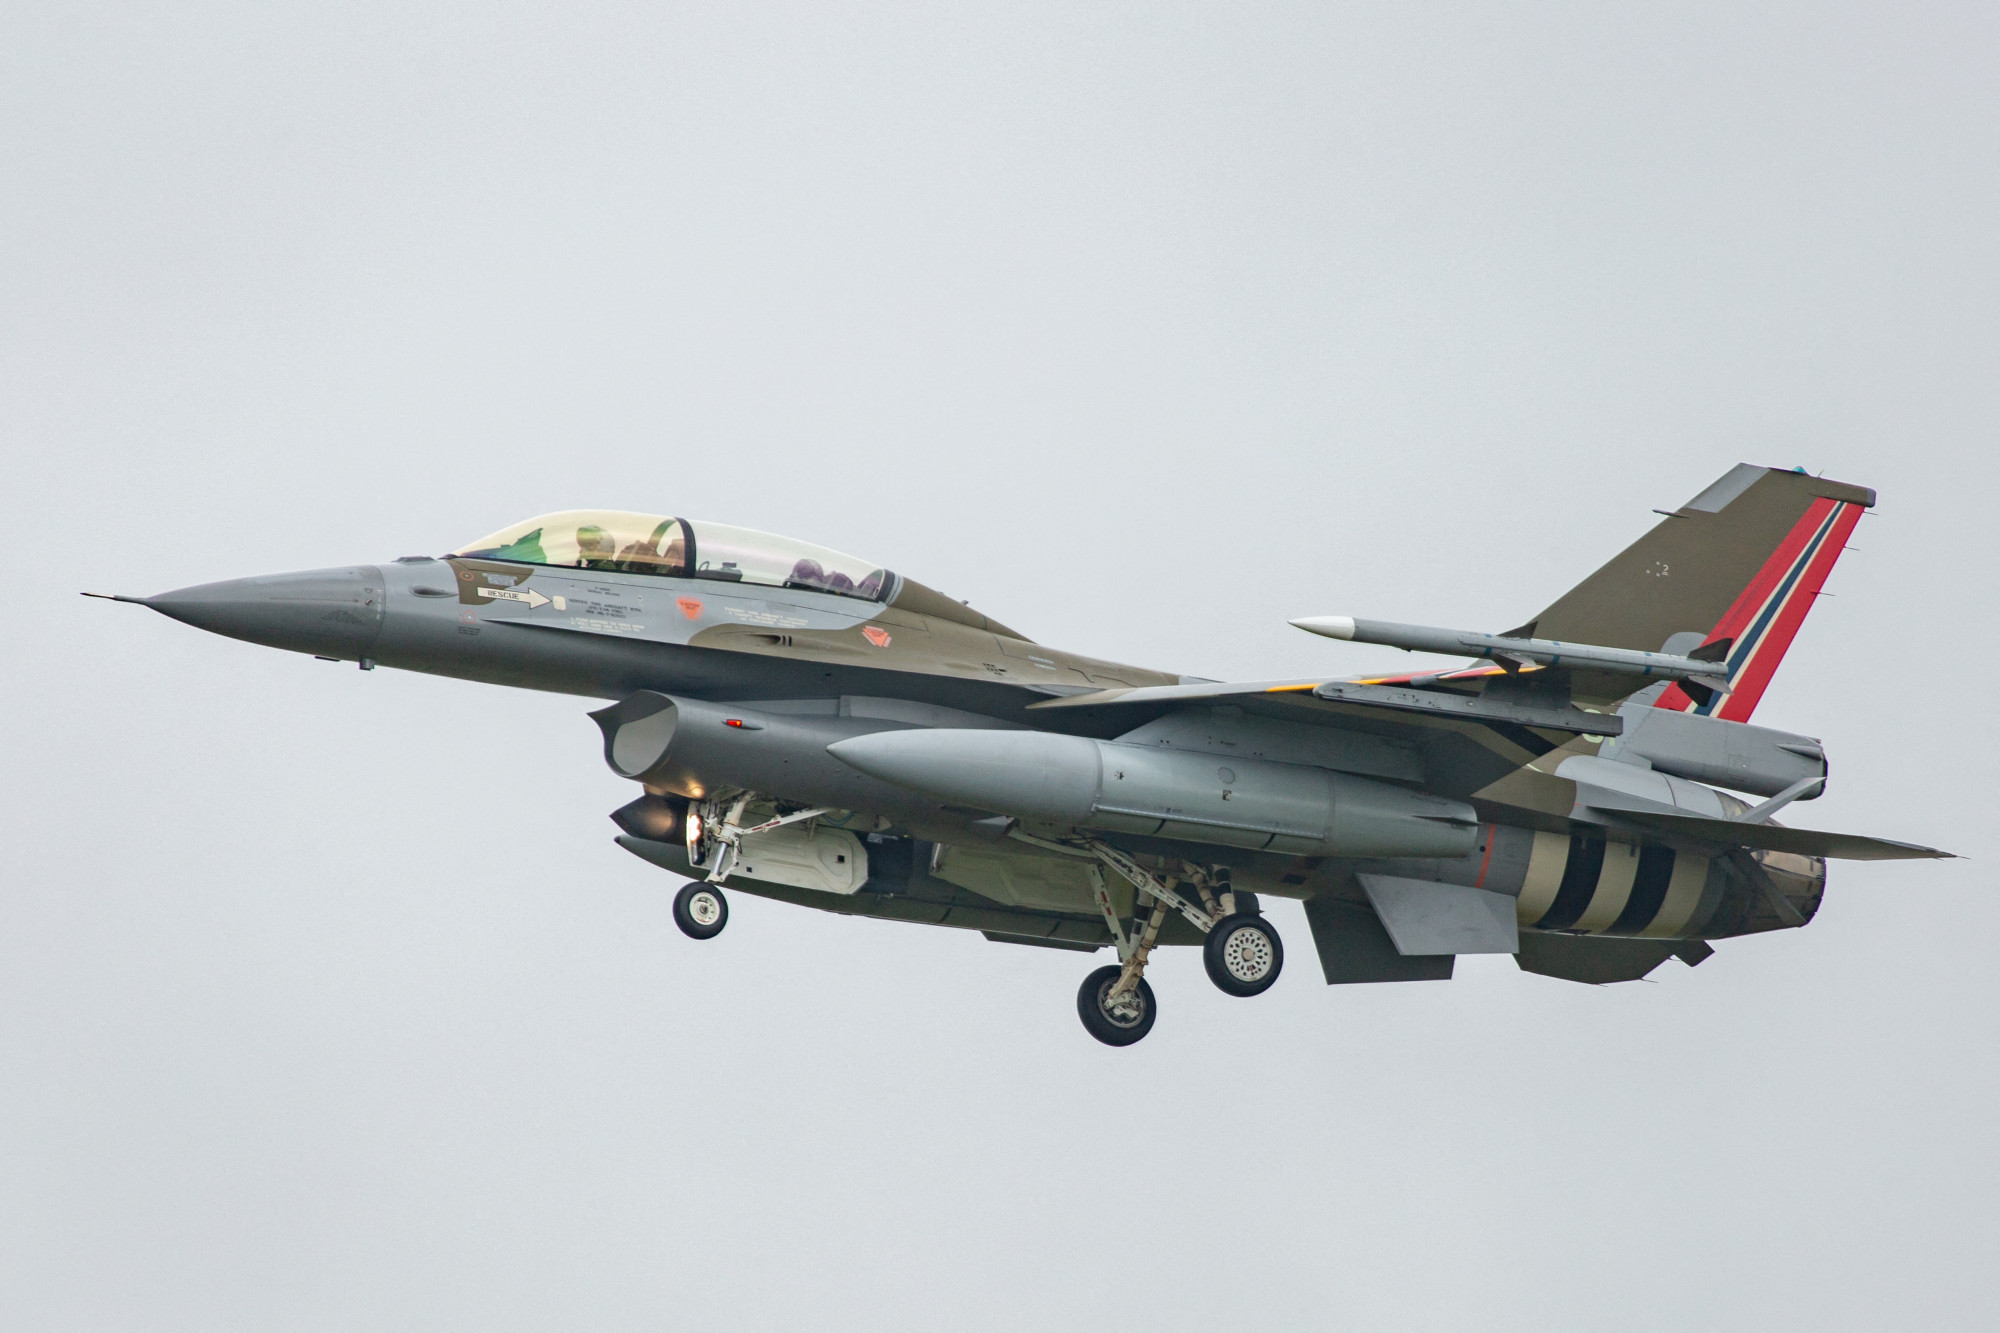 Amerikára várnak az európai országok, hogy elkezdhessék az ukránok kiképzését az F-16-osokra